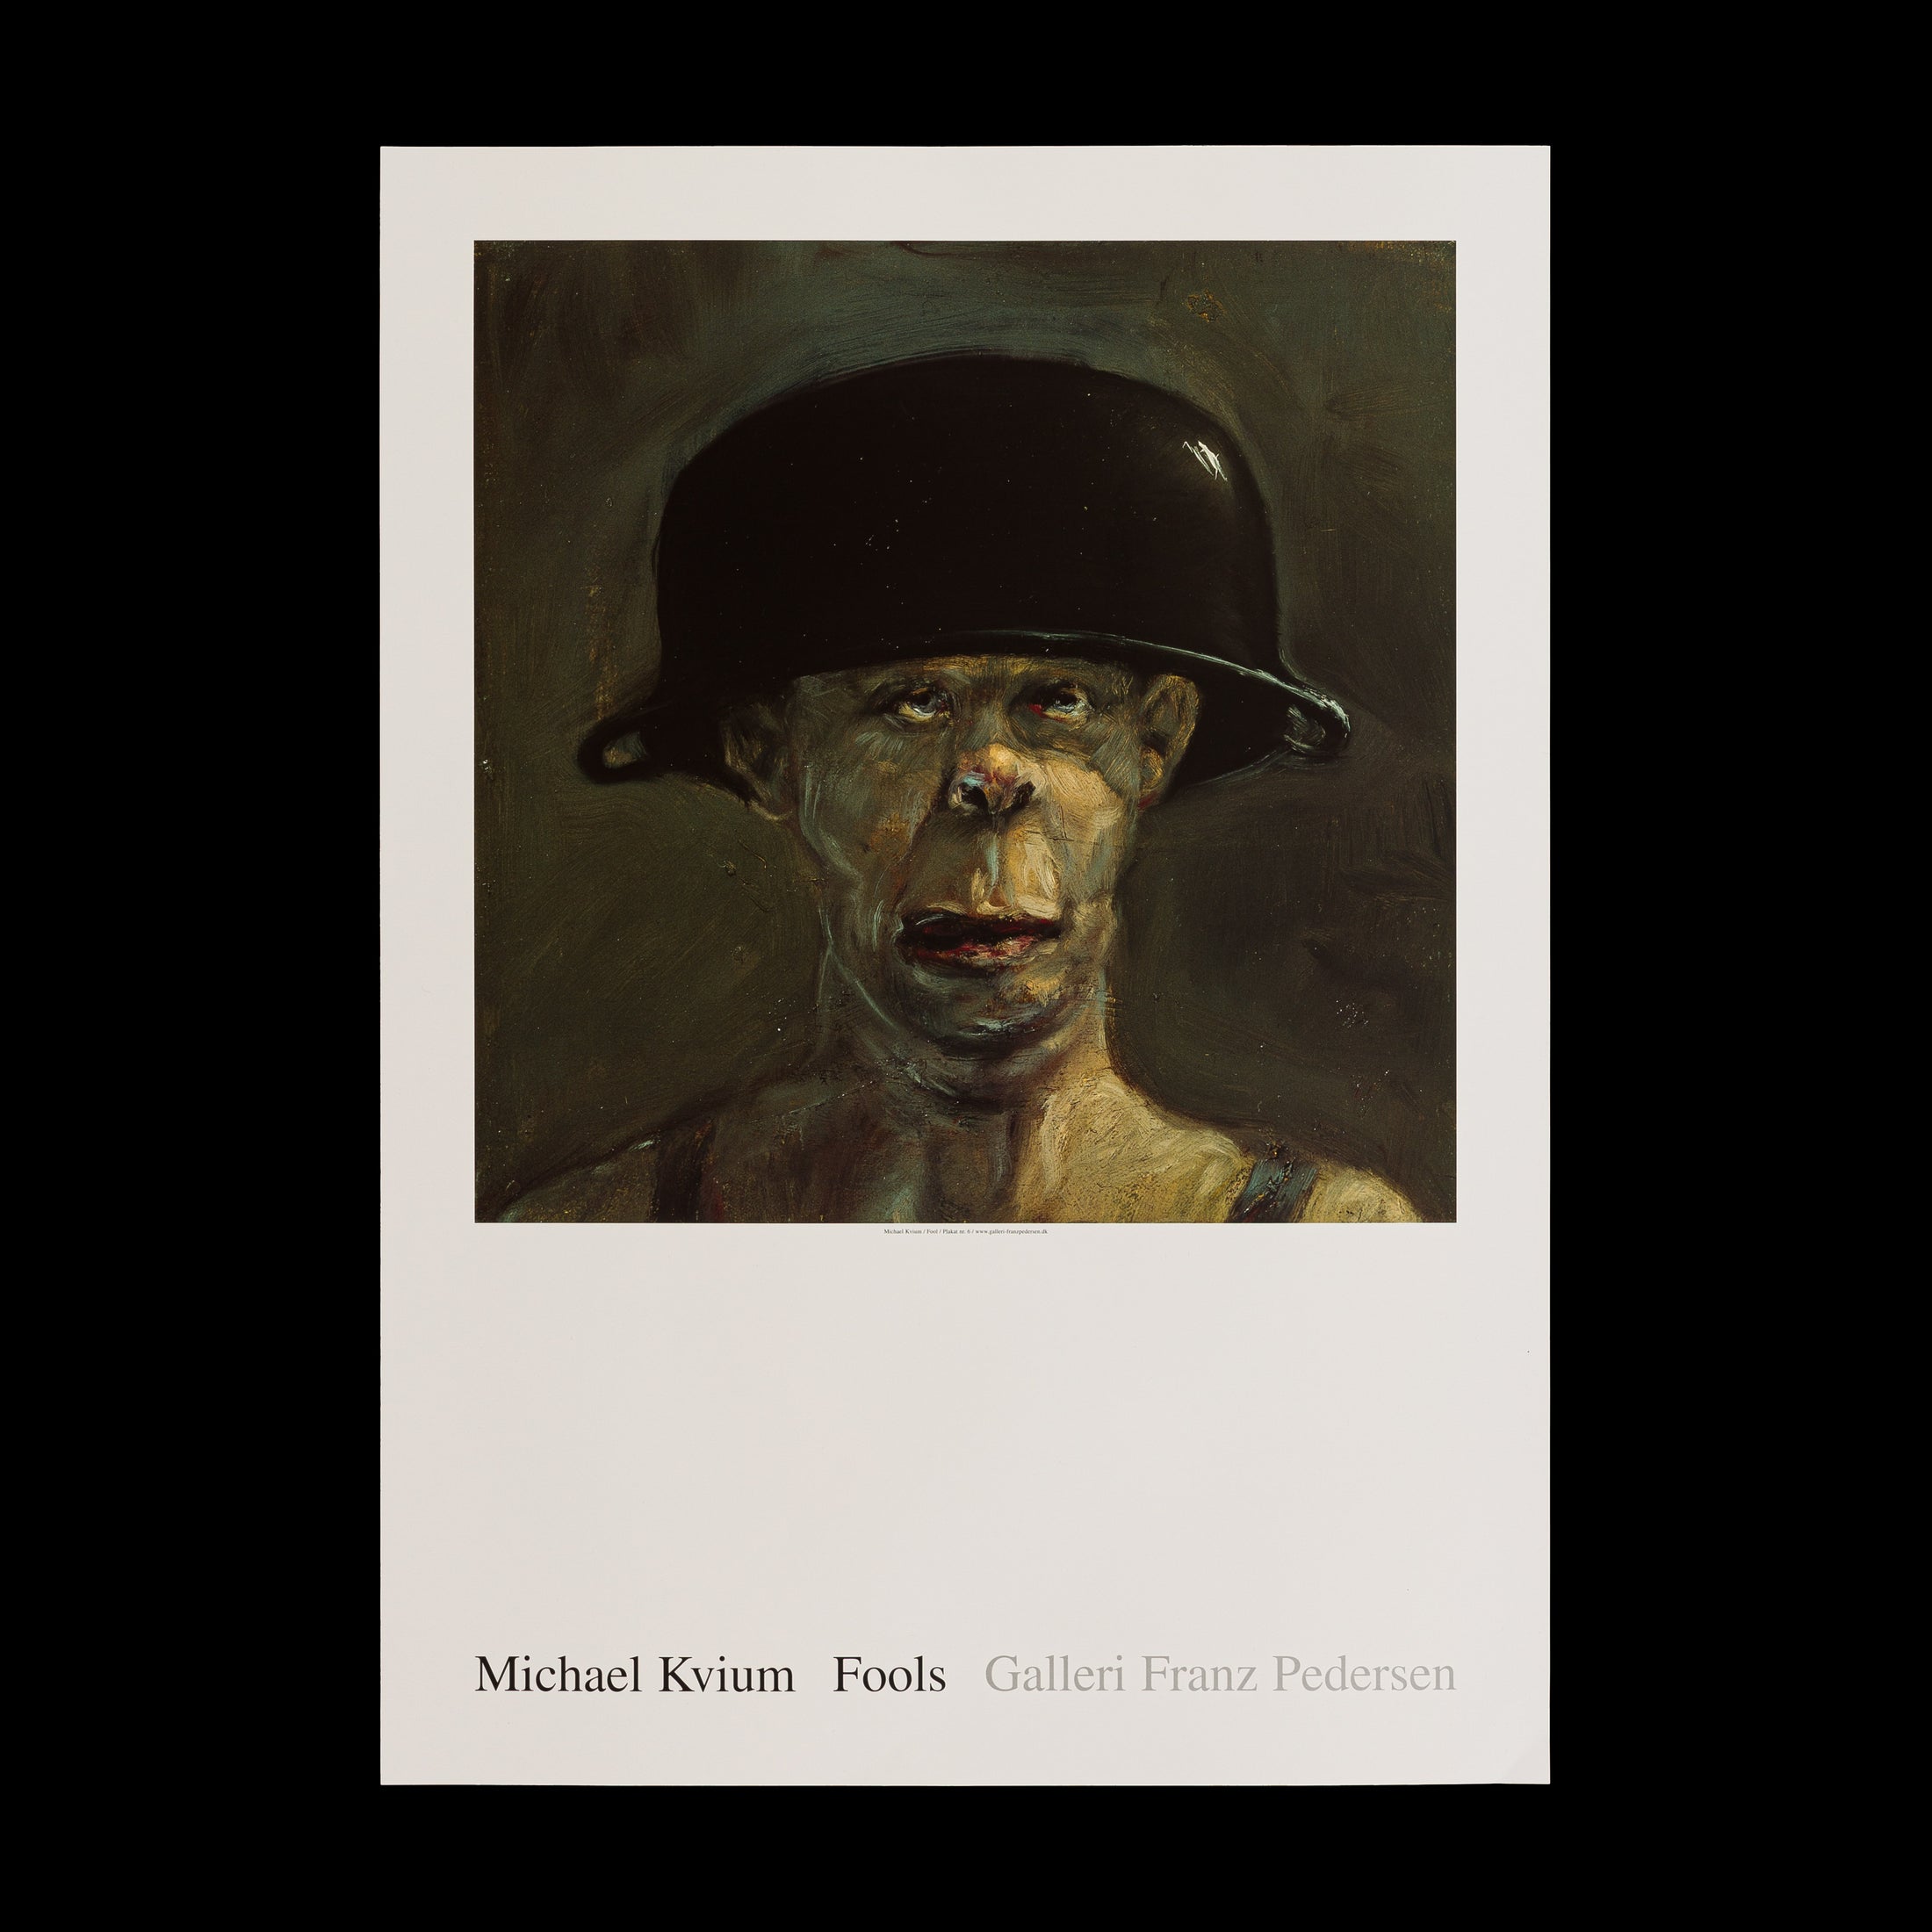 Plakat af Michael Kviums Fool no. 3 fra Galleri Franz Pedersen, som viser en figur med en hjelm og et intens, stirrende blik, der udforsker temaer om identitet og selvrefleksion.